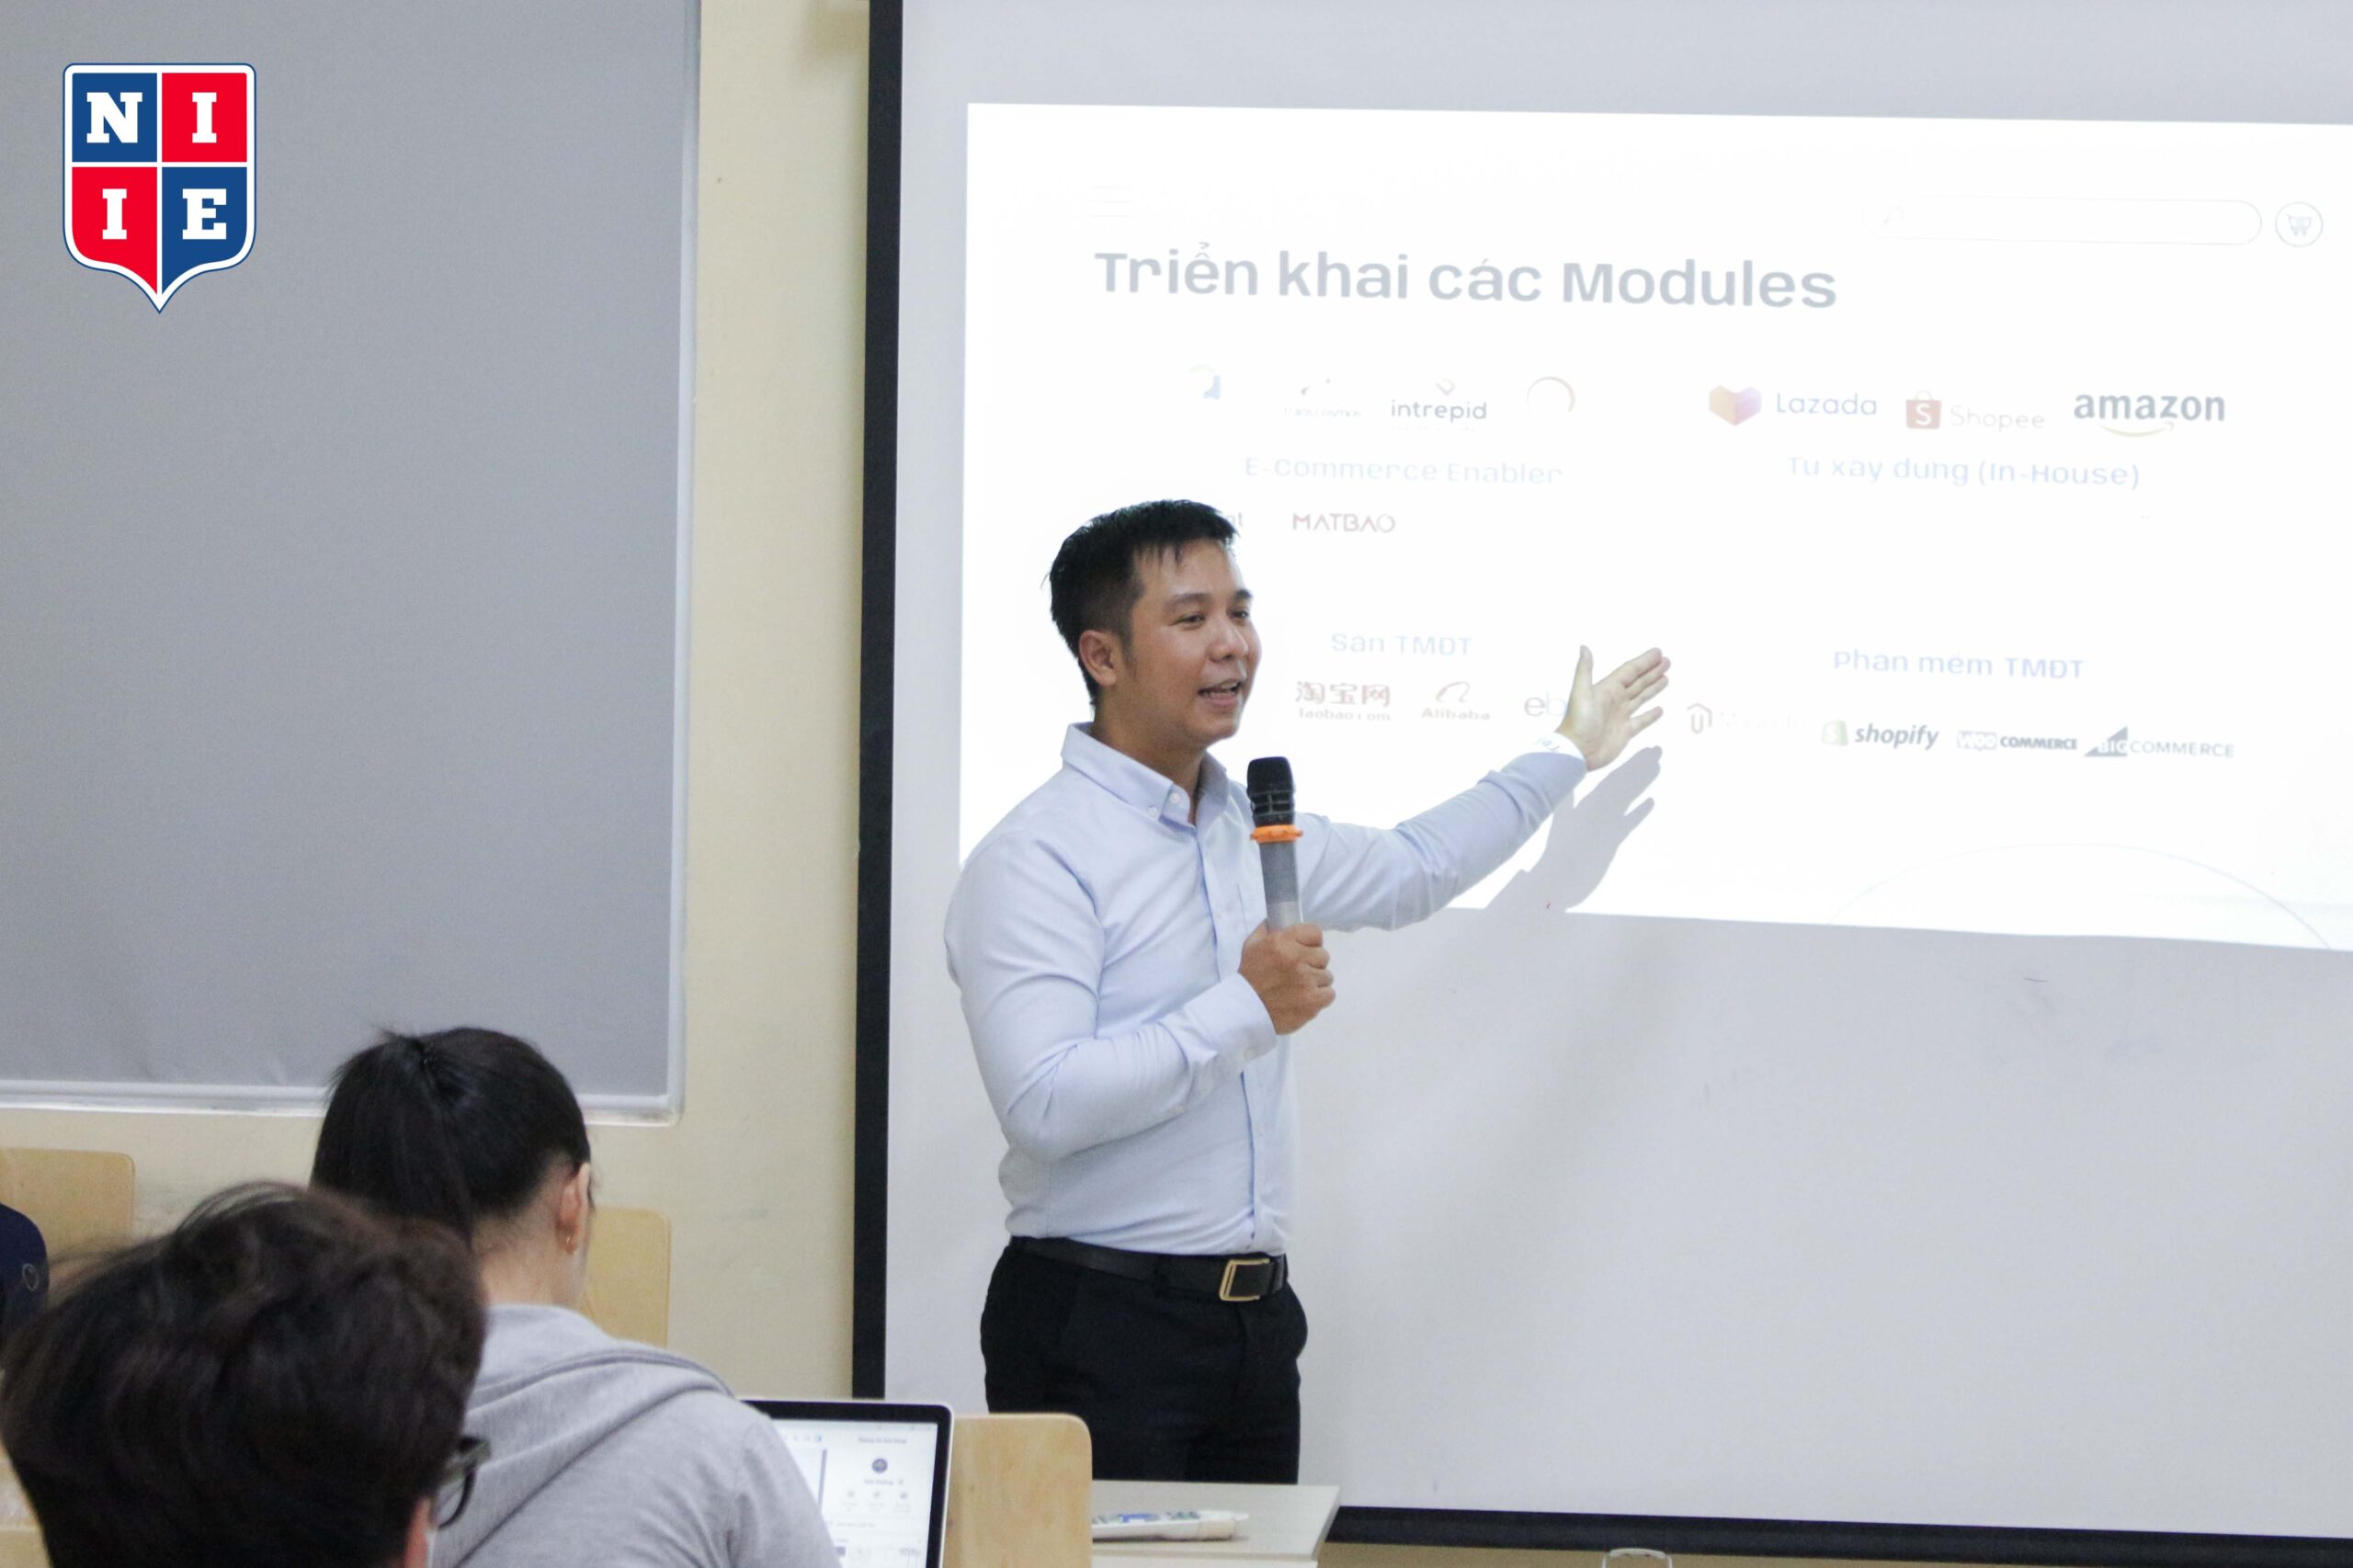 Thầy Hoàng Minh đang chia sẻ về các Modules đang được triển khai tại các sàn thương mại điện tử trên thực tế.